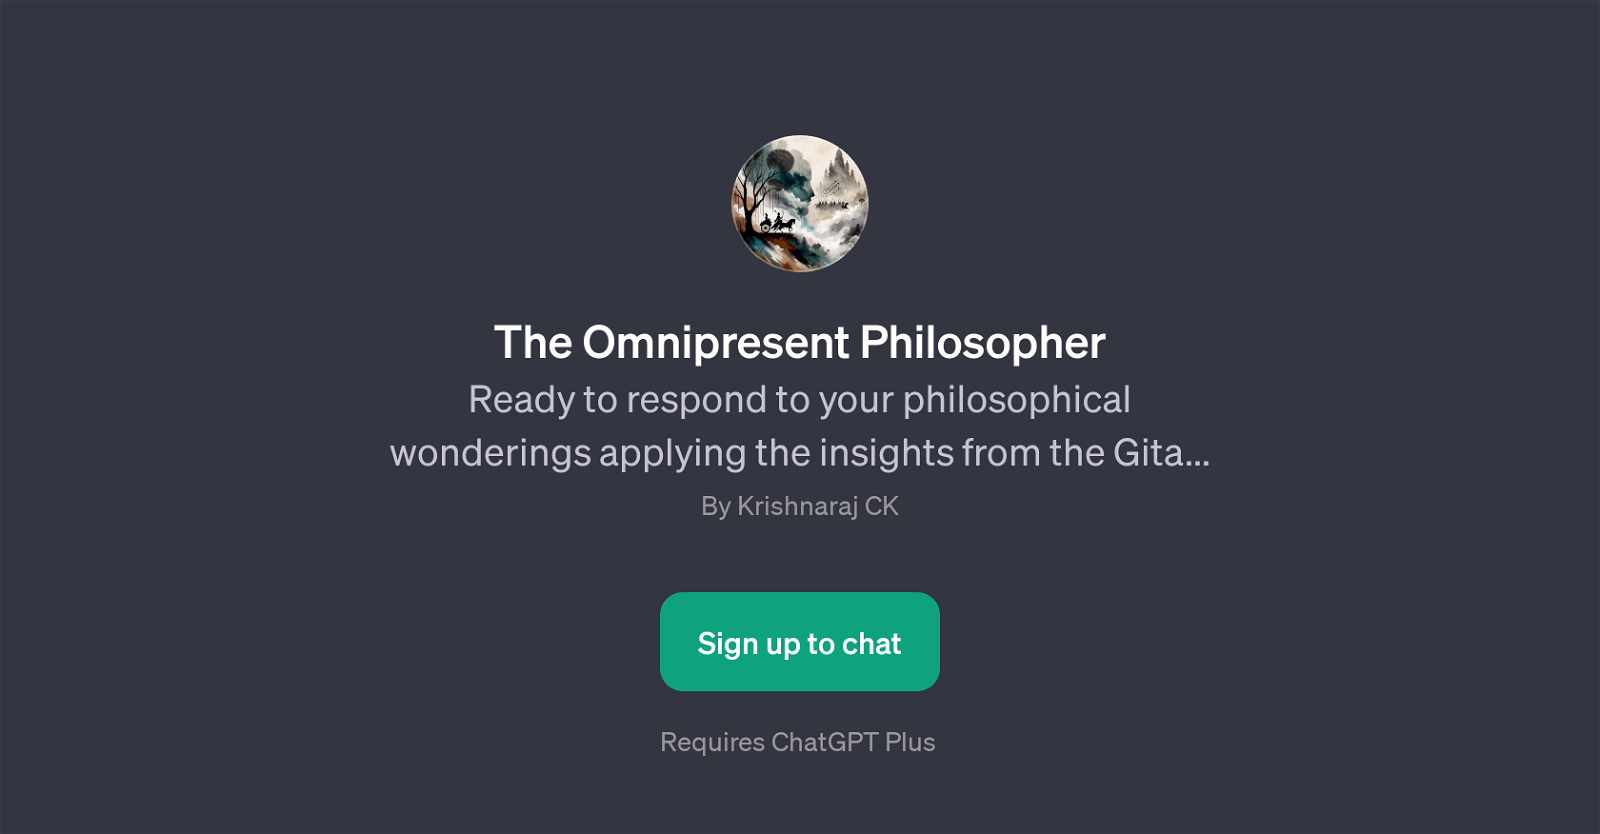 The Omnipresent Philosopher website